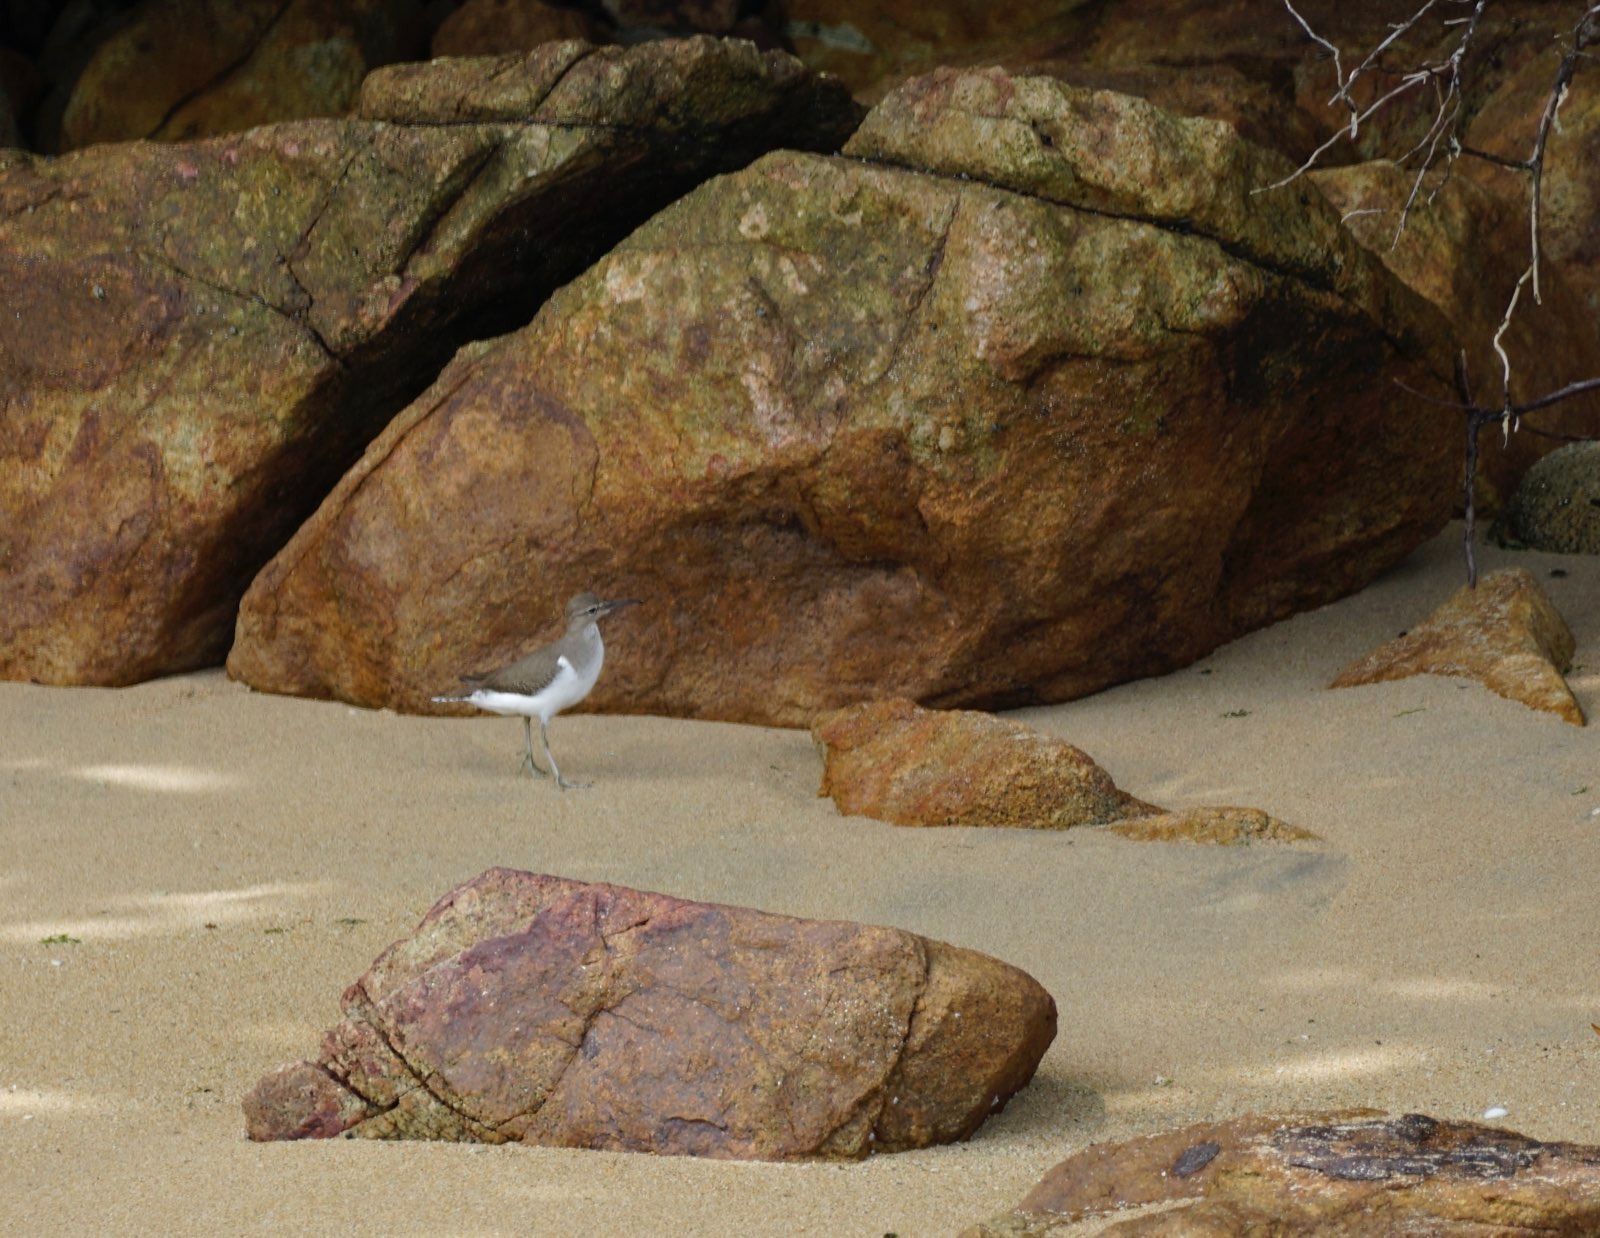 Small bird on a sandy beach.